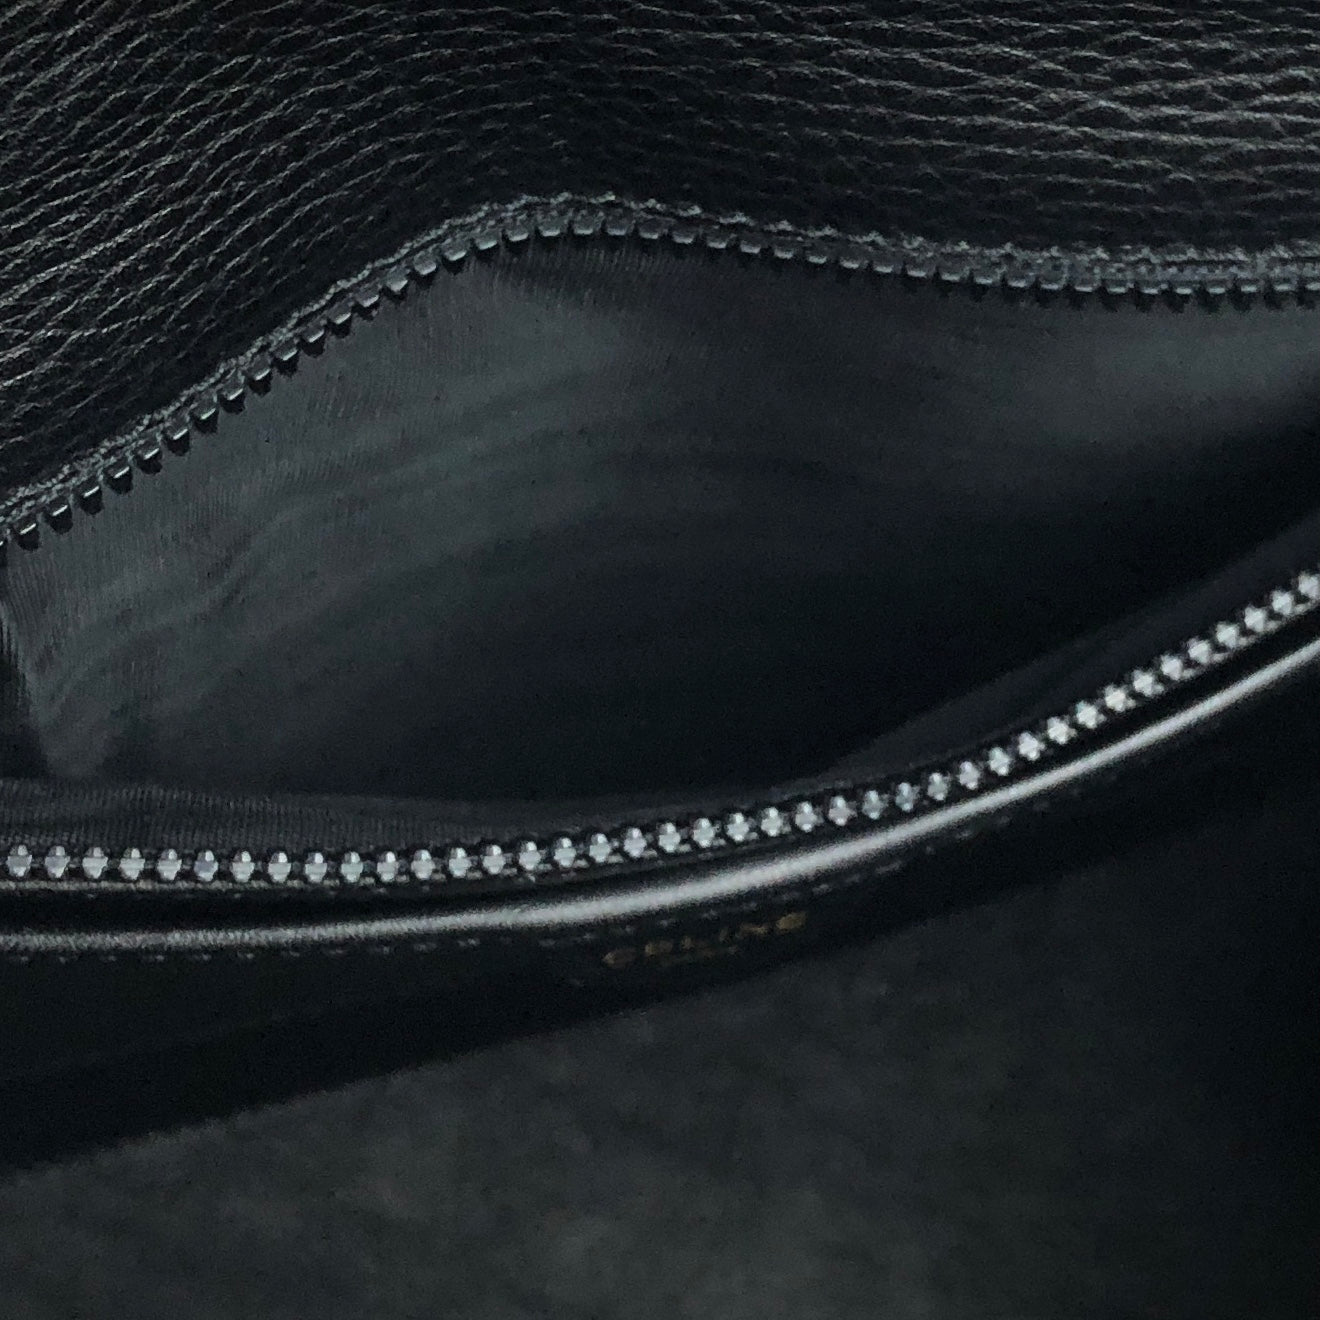 CELINE Mantel Chain Gancini Handbag Black Vintage Old Celine vtz7d4